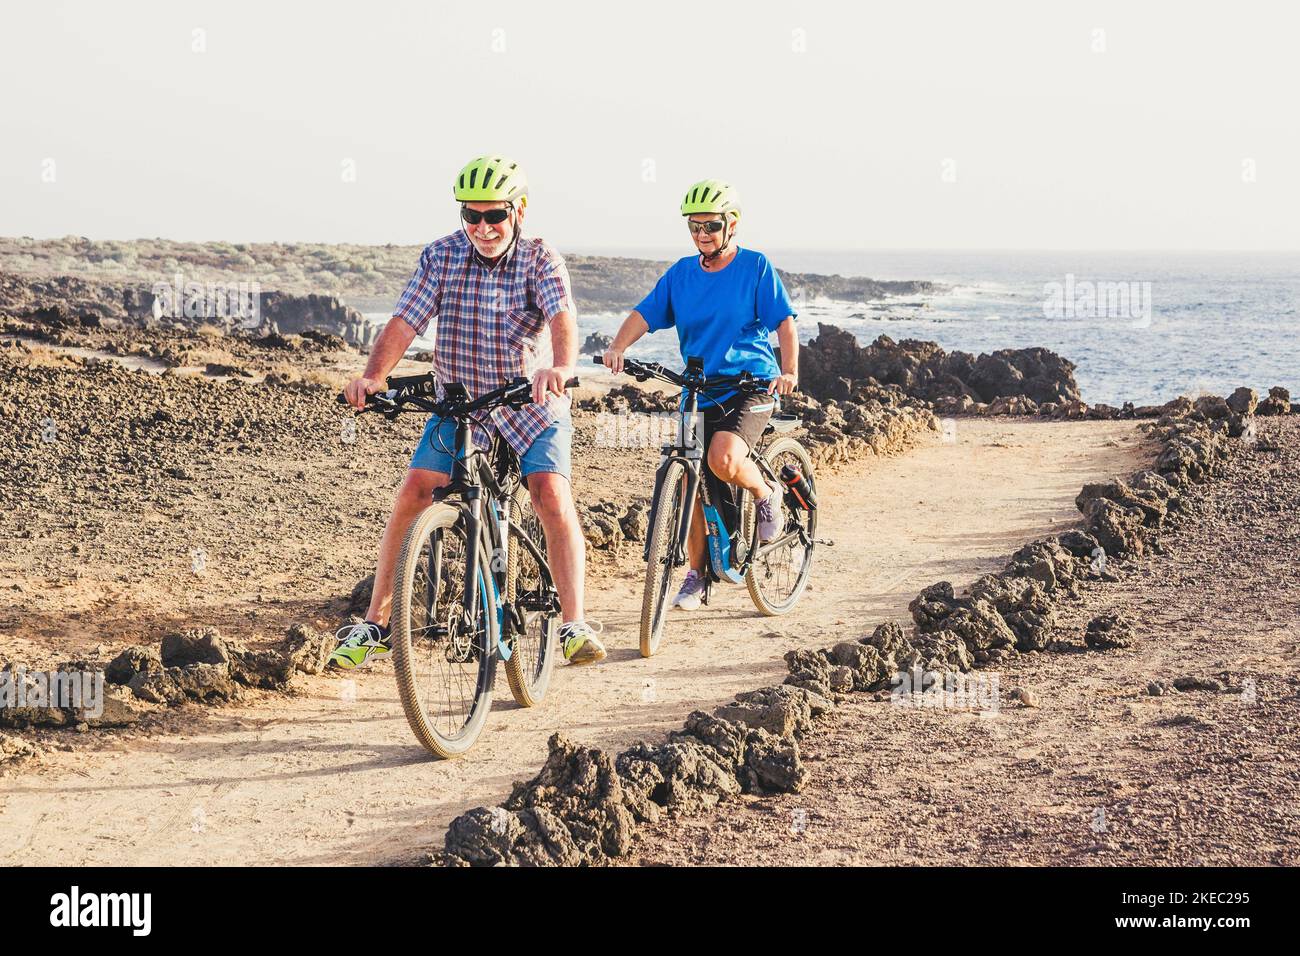 Ein paar von zwei Senioren, die zusammen auf dem Boden Fahrrad fahren, Spaß haben - Bewegung machen, um gesund und fit zu sein Stockfoto